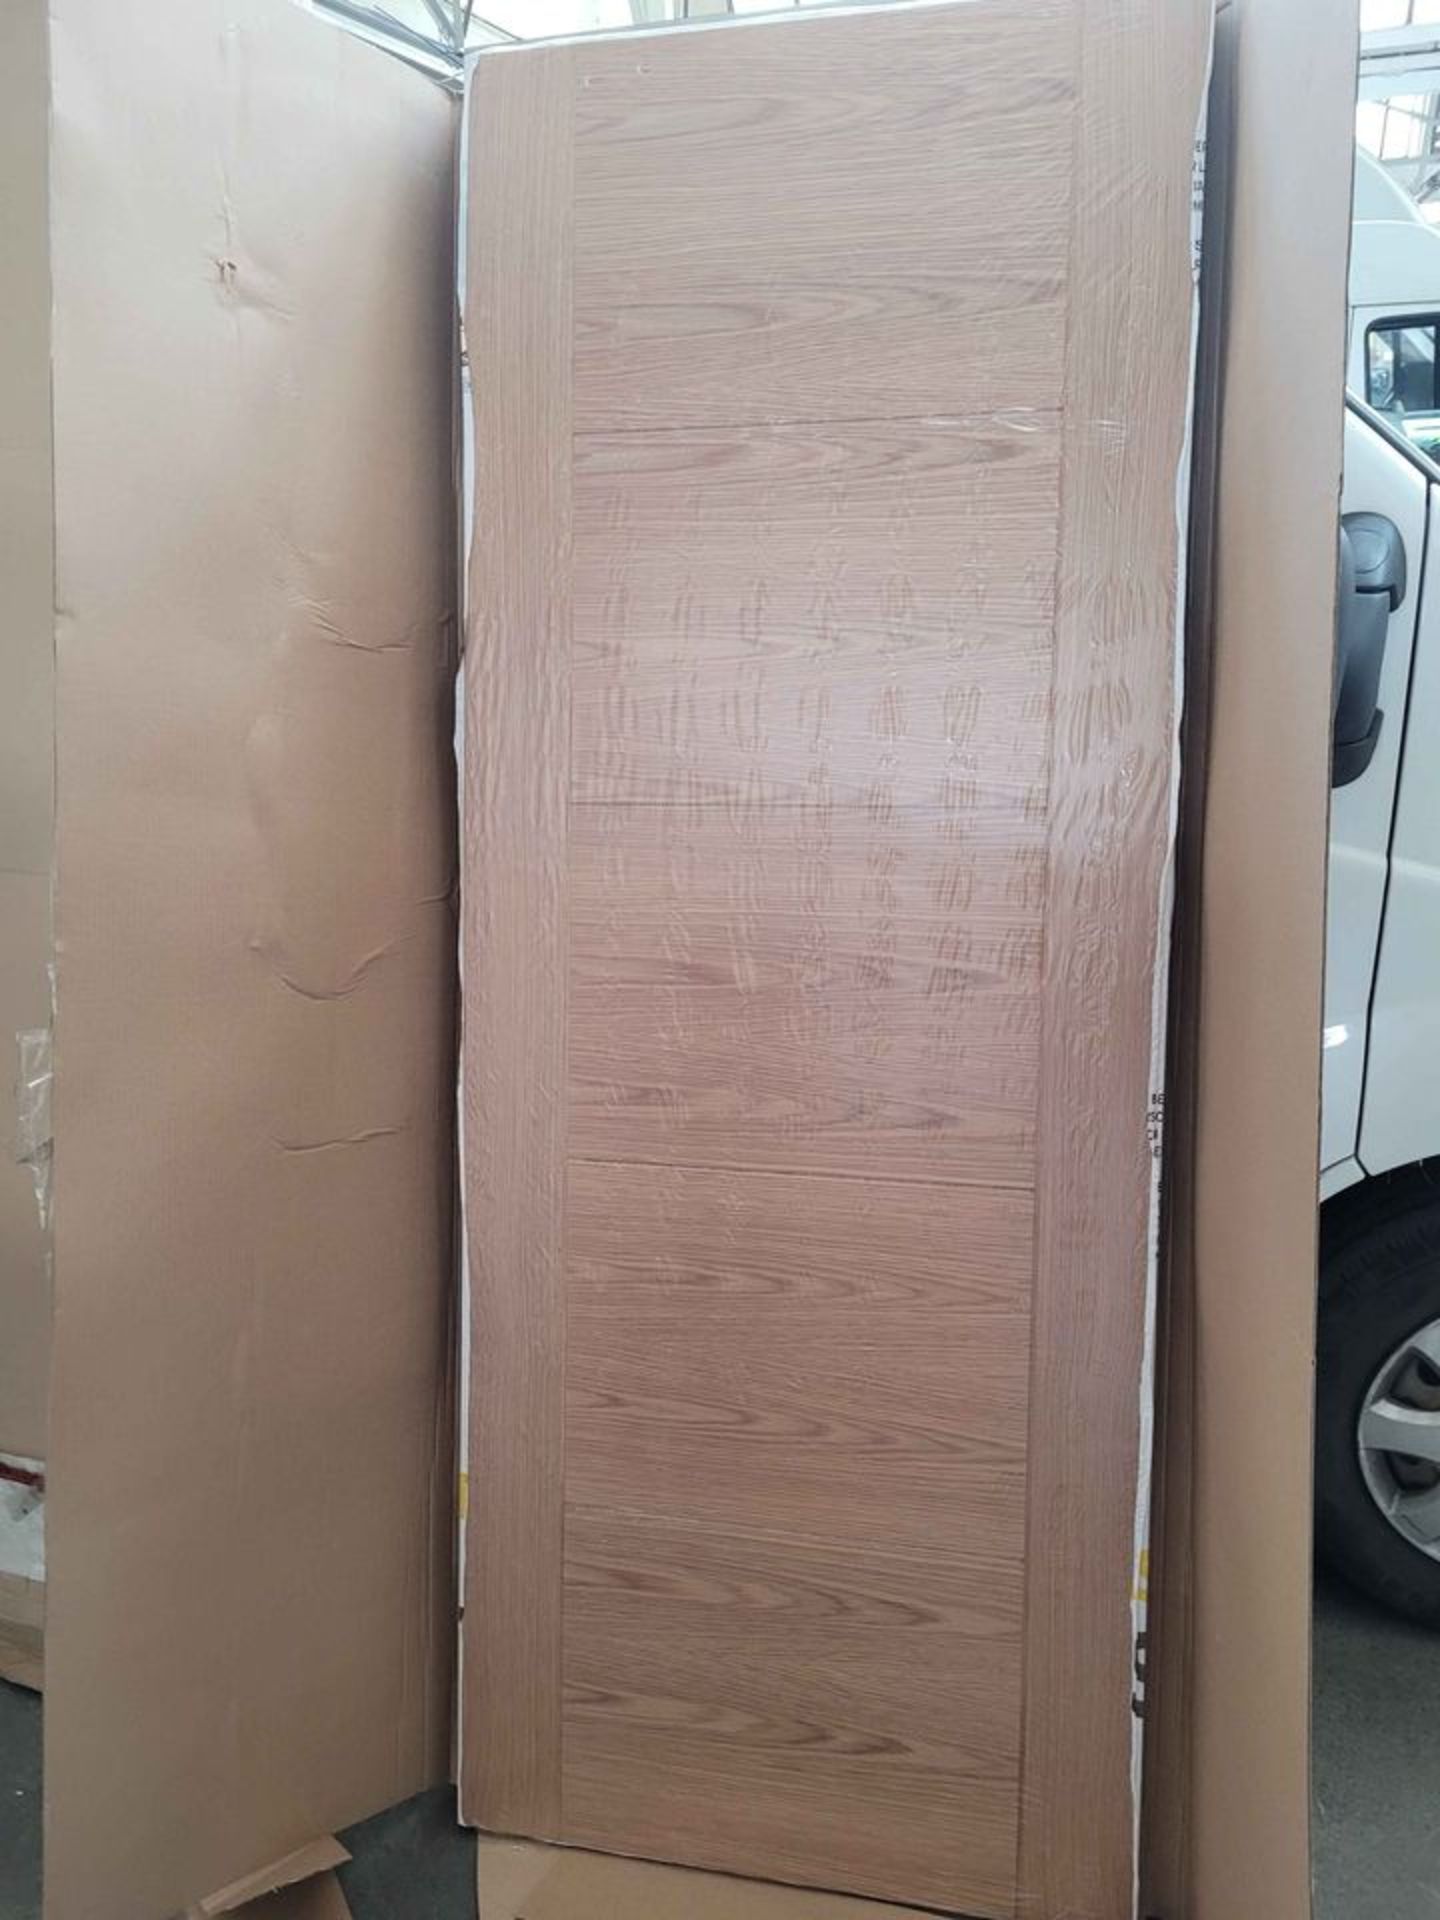 Solid oak internal door. 30 inch x 78 inch